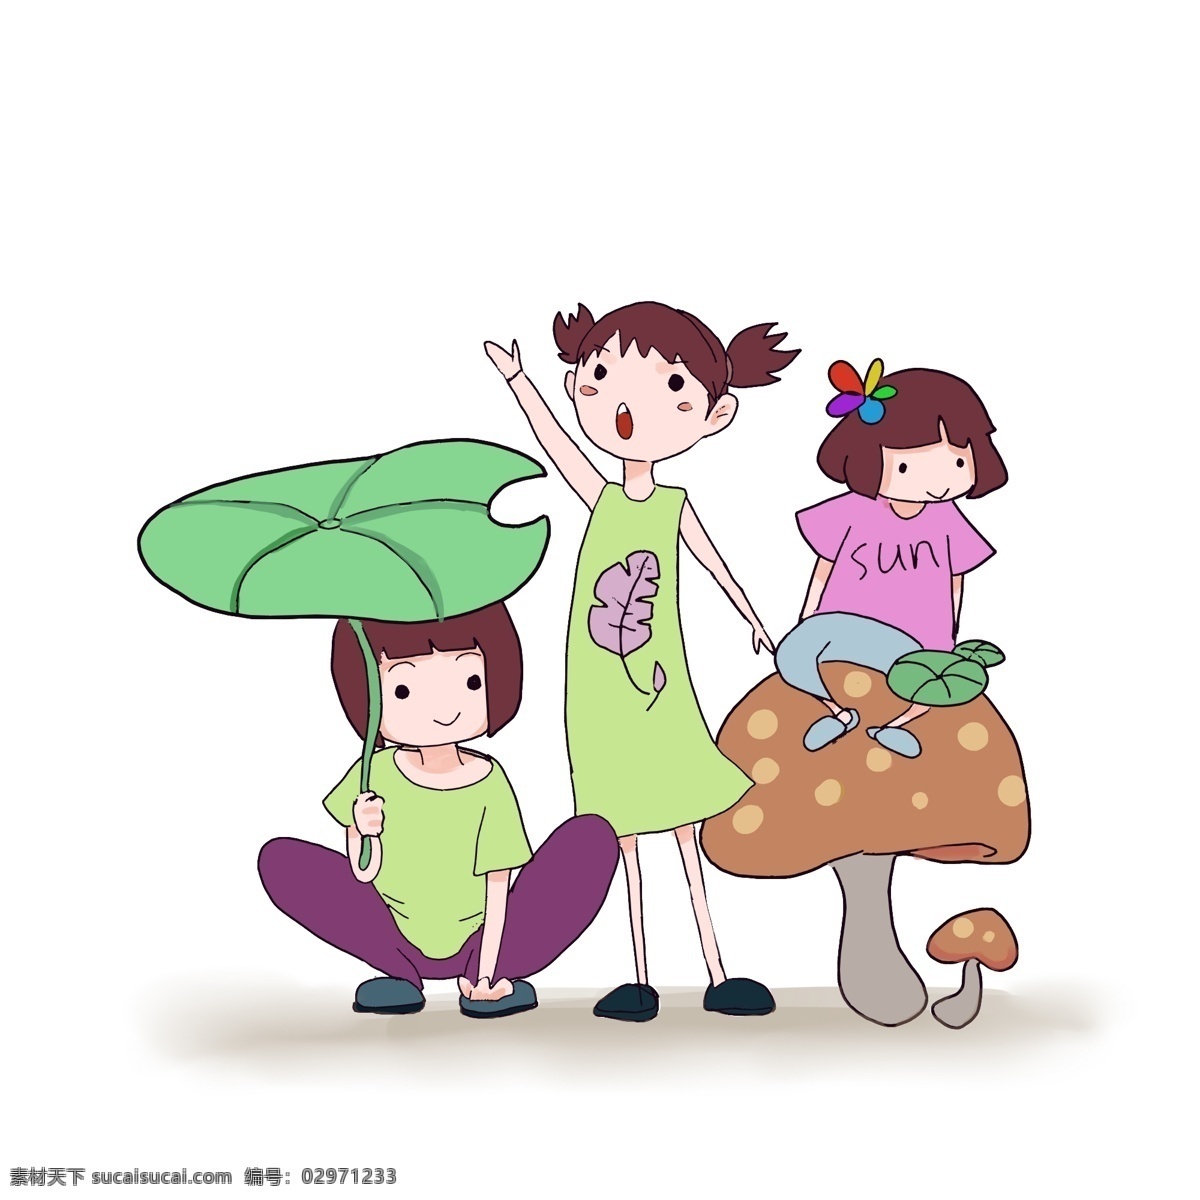 夏天 小 姐妹 一齐 出游 可爱 荷叶 蘑菇 游玩